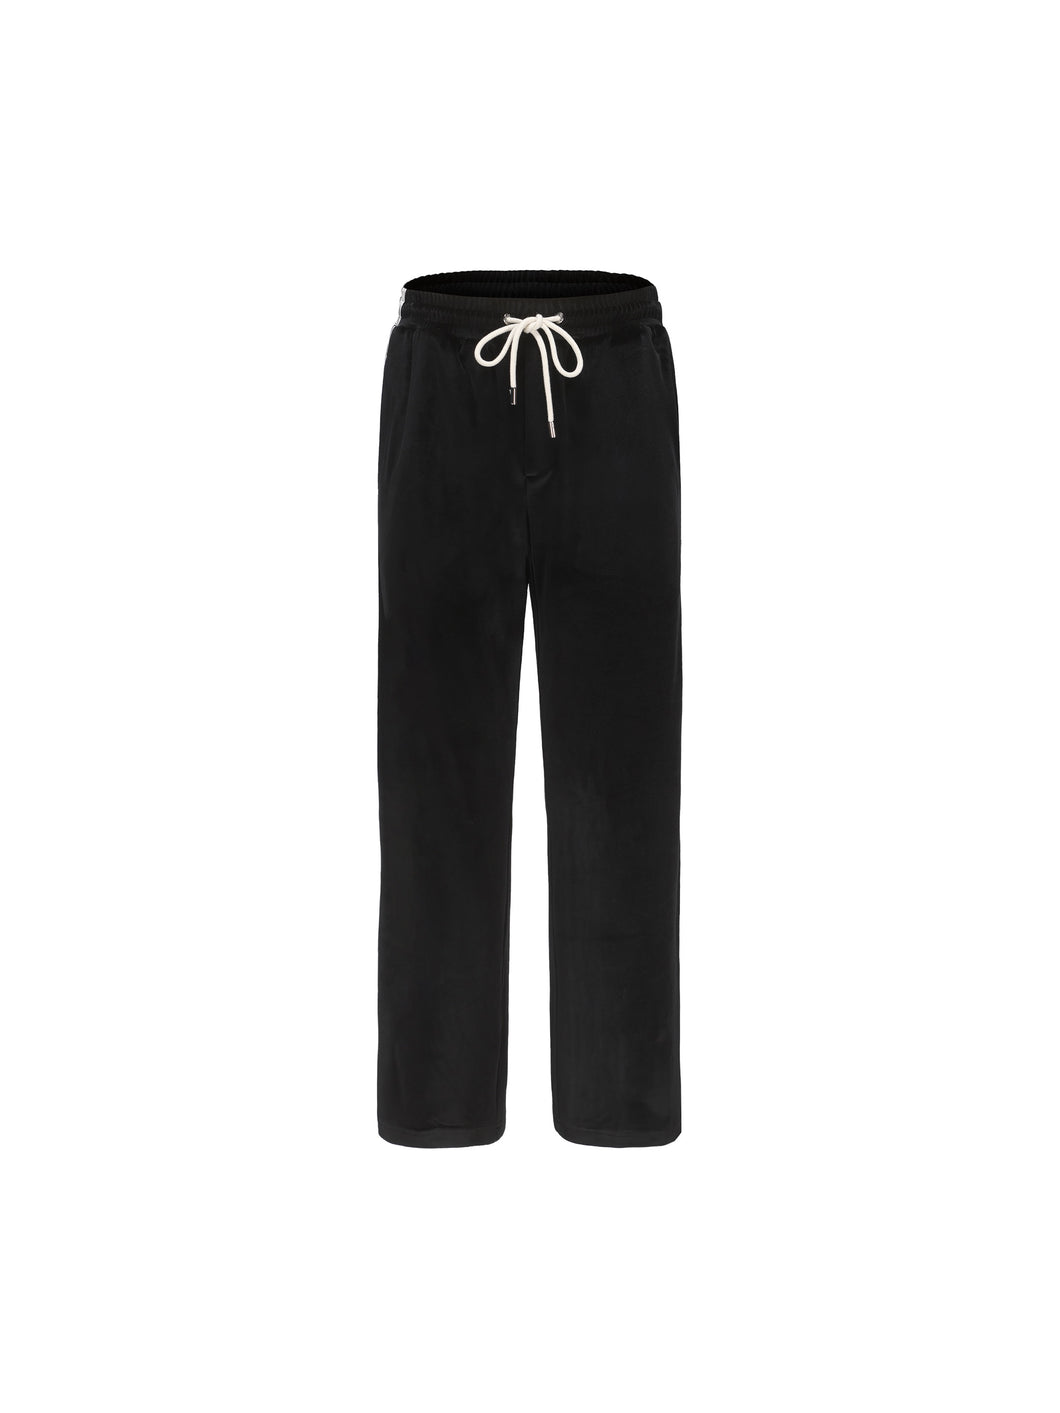 Black & White Velvet Stripe Patchwork Trousers